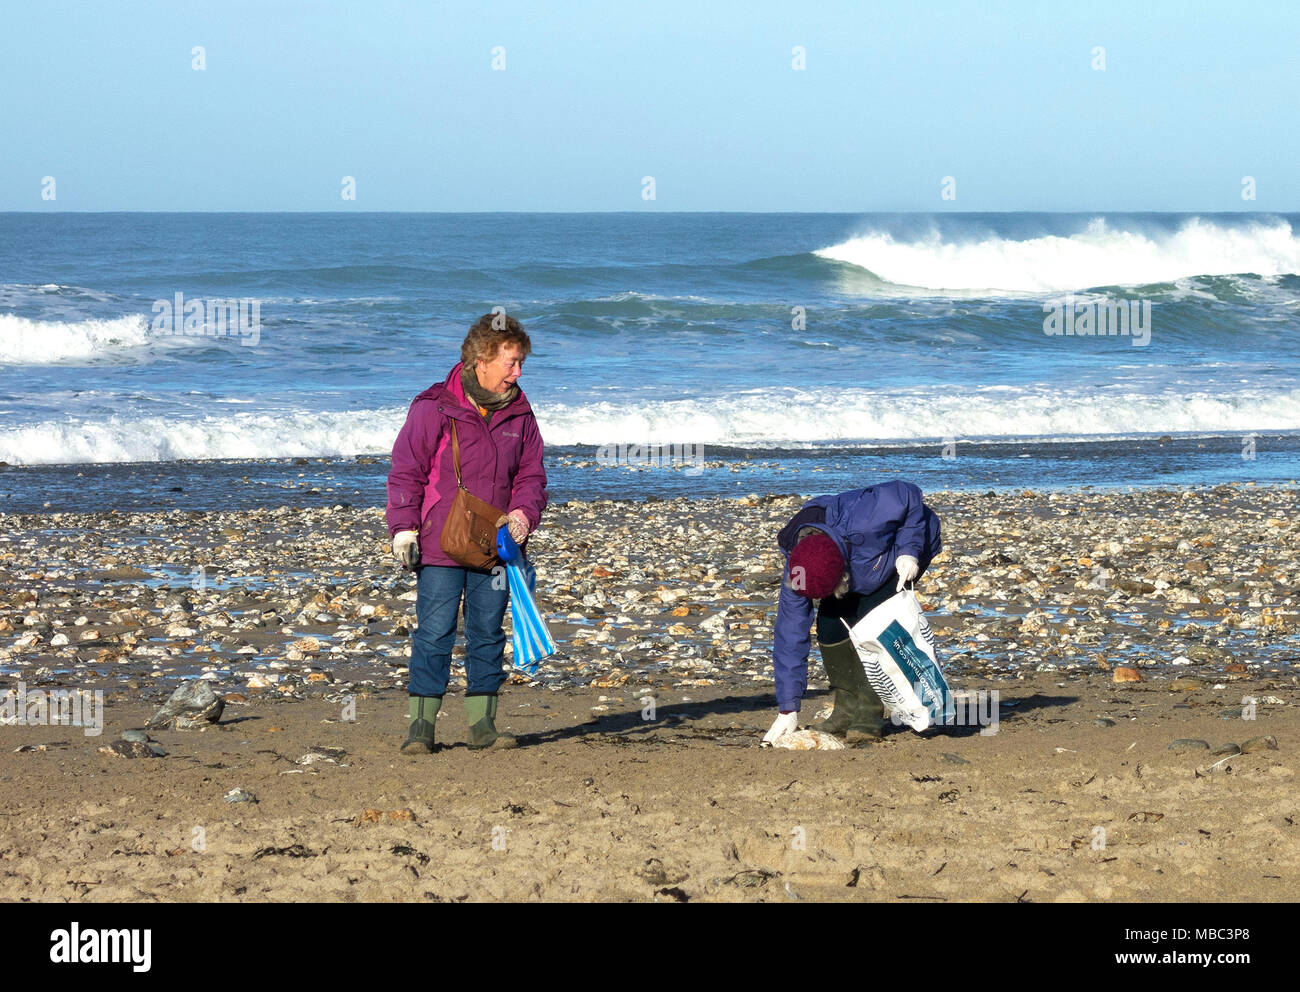 Zwei elderley Frauen sammeln von Kunststoff der Strand in porthtowan, Cornwall, England, Großbritannien, Großbritannien. Stockfoto